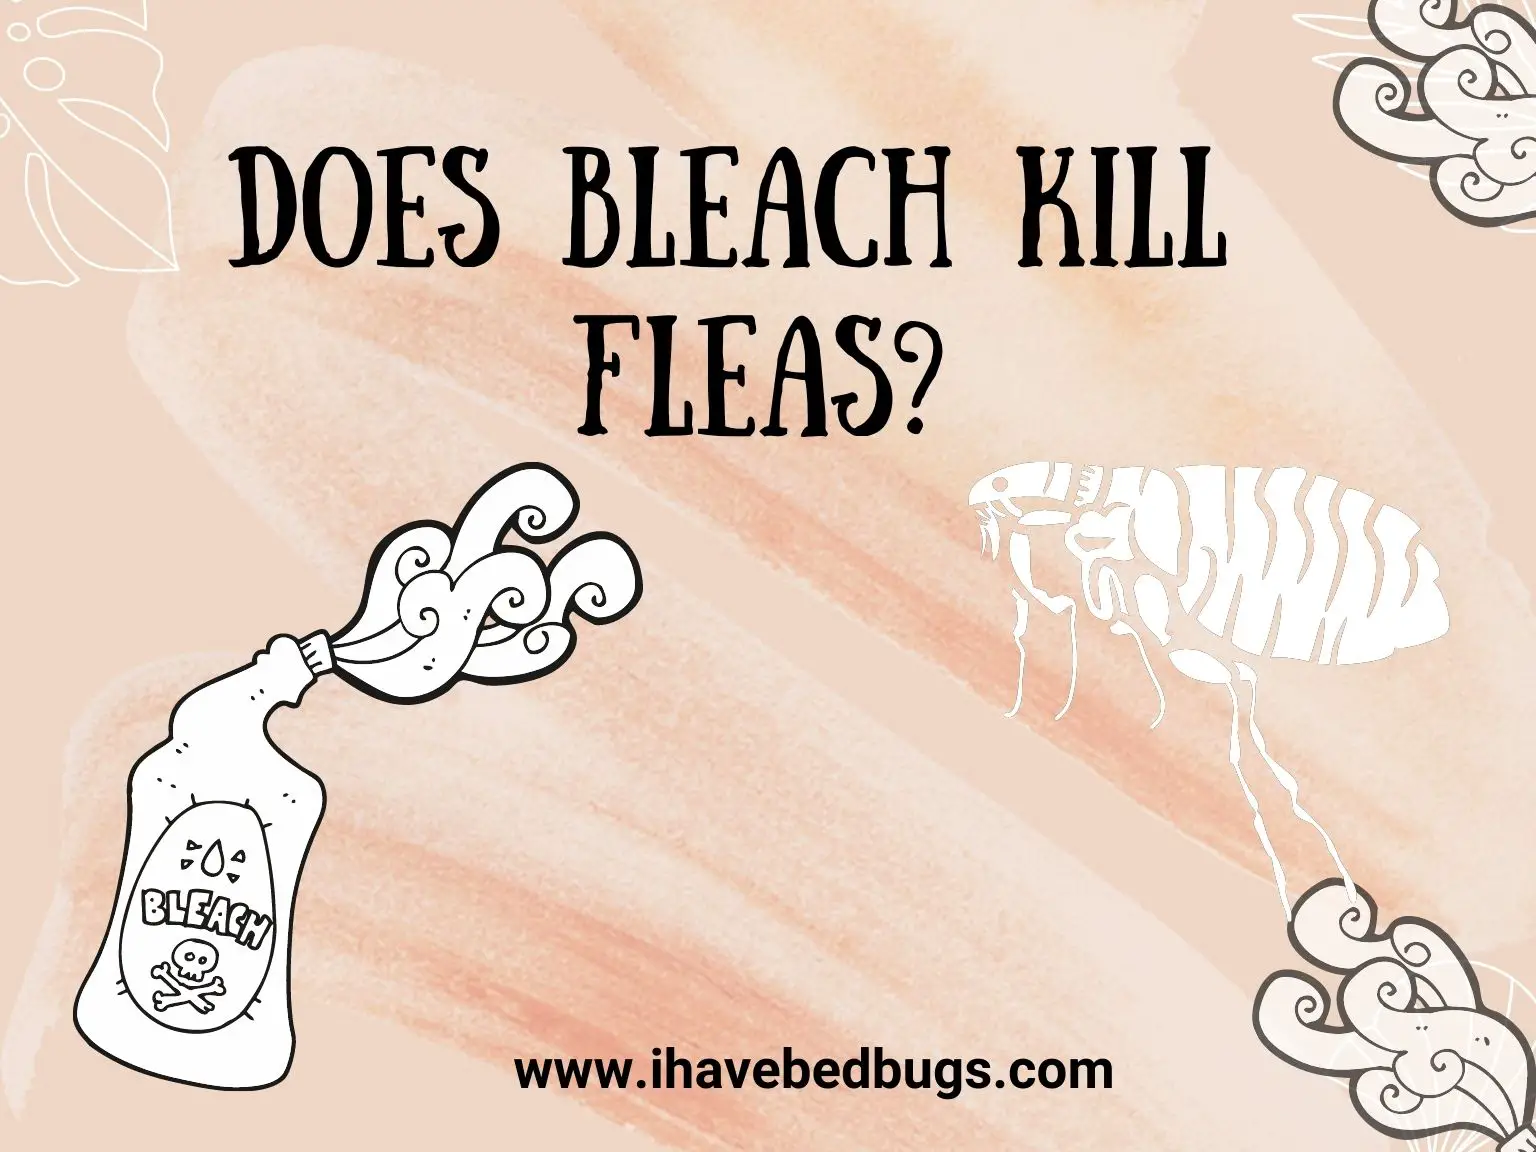 Does Bleach Kill Fleas